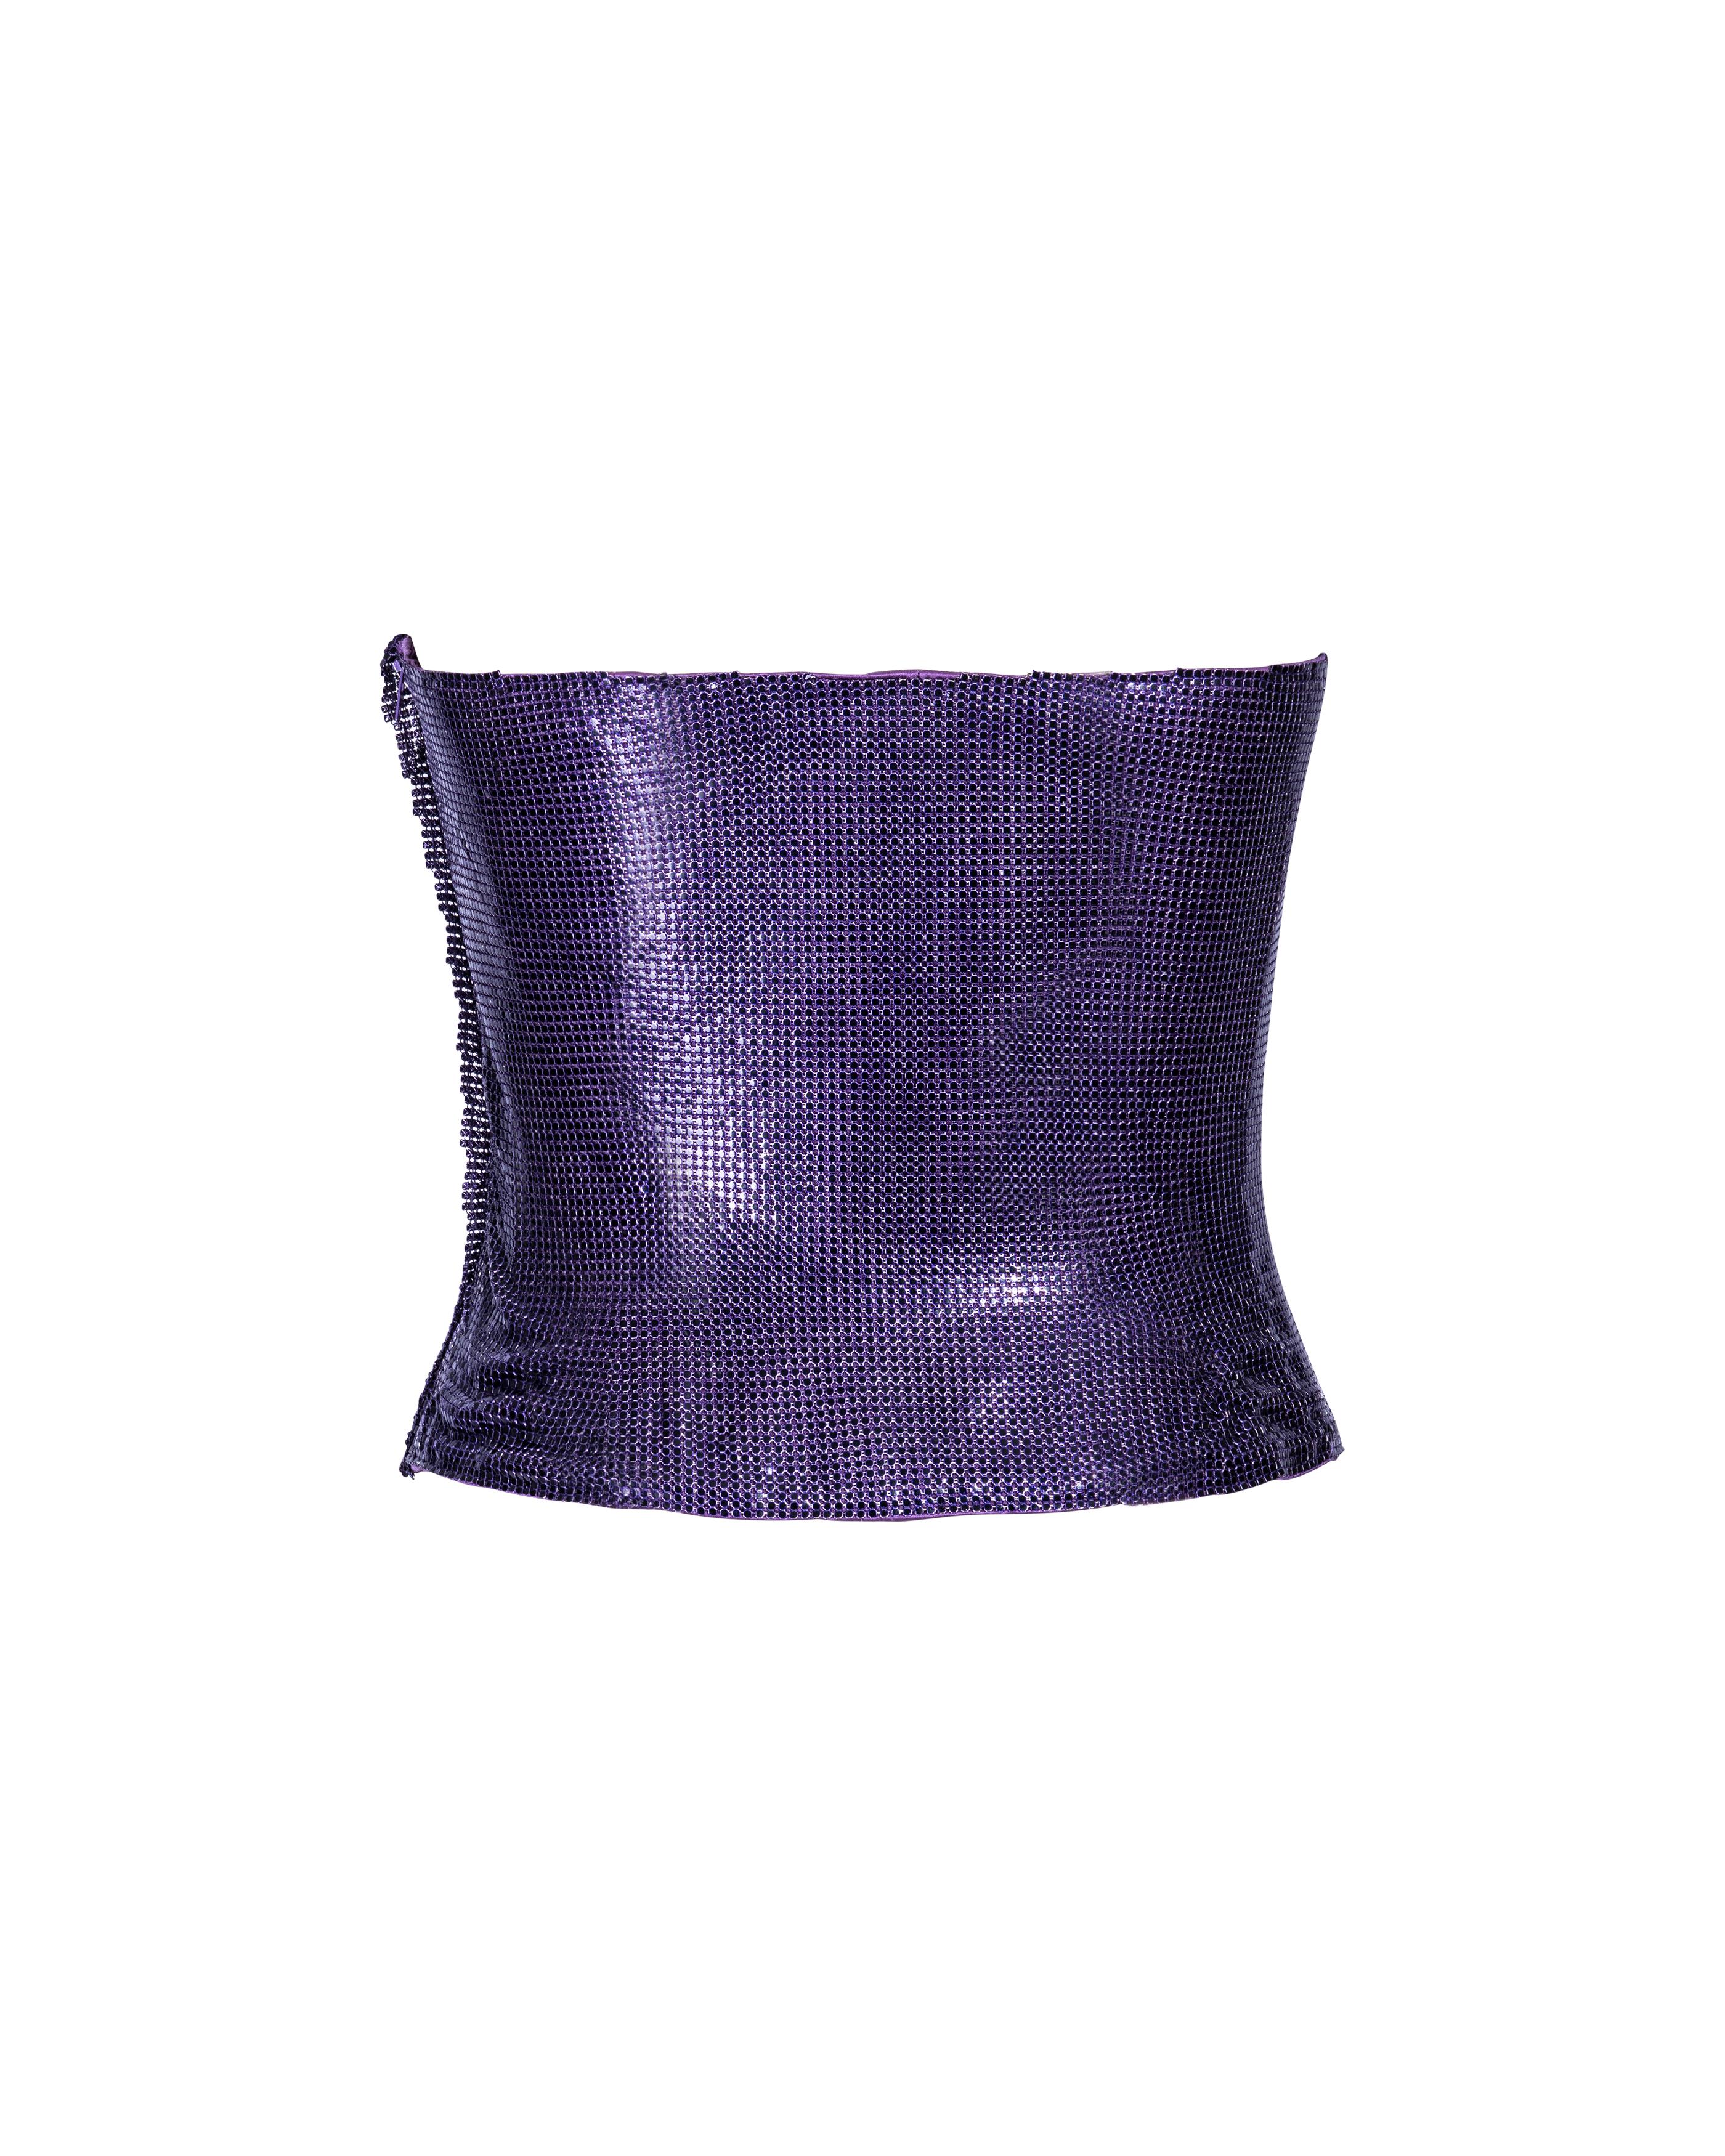 S/S 1998 Atelier Versace Haute Couture Top cotte de mailles violet sans bretelles Oroton en vente 1